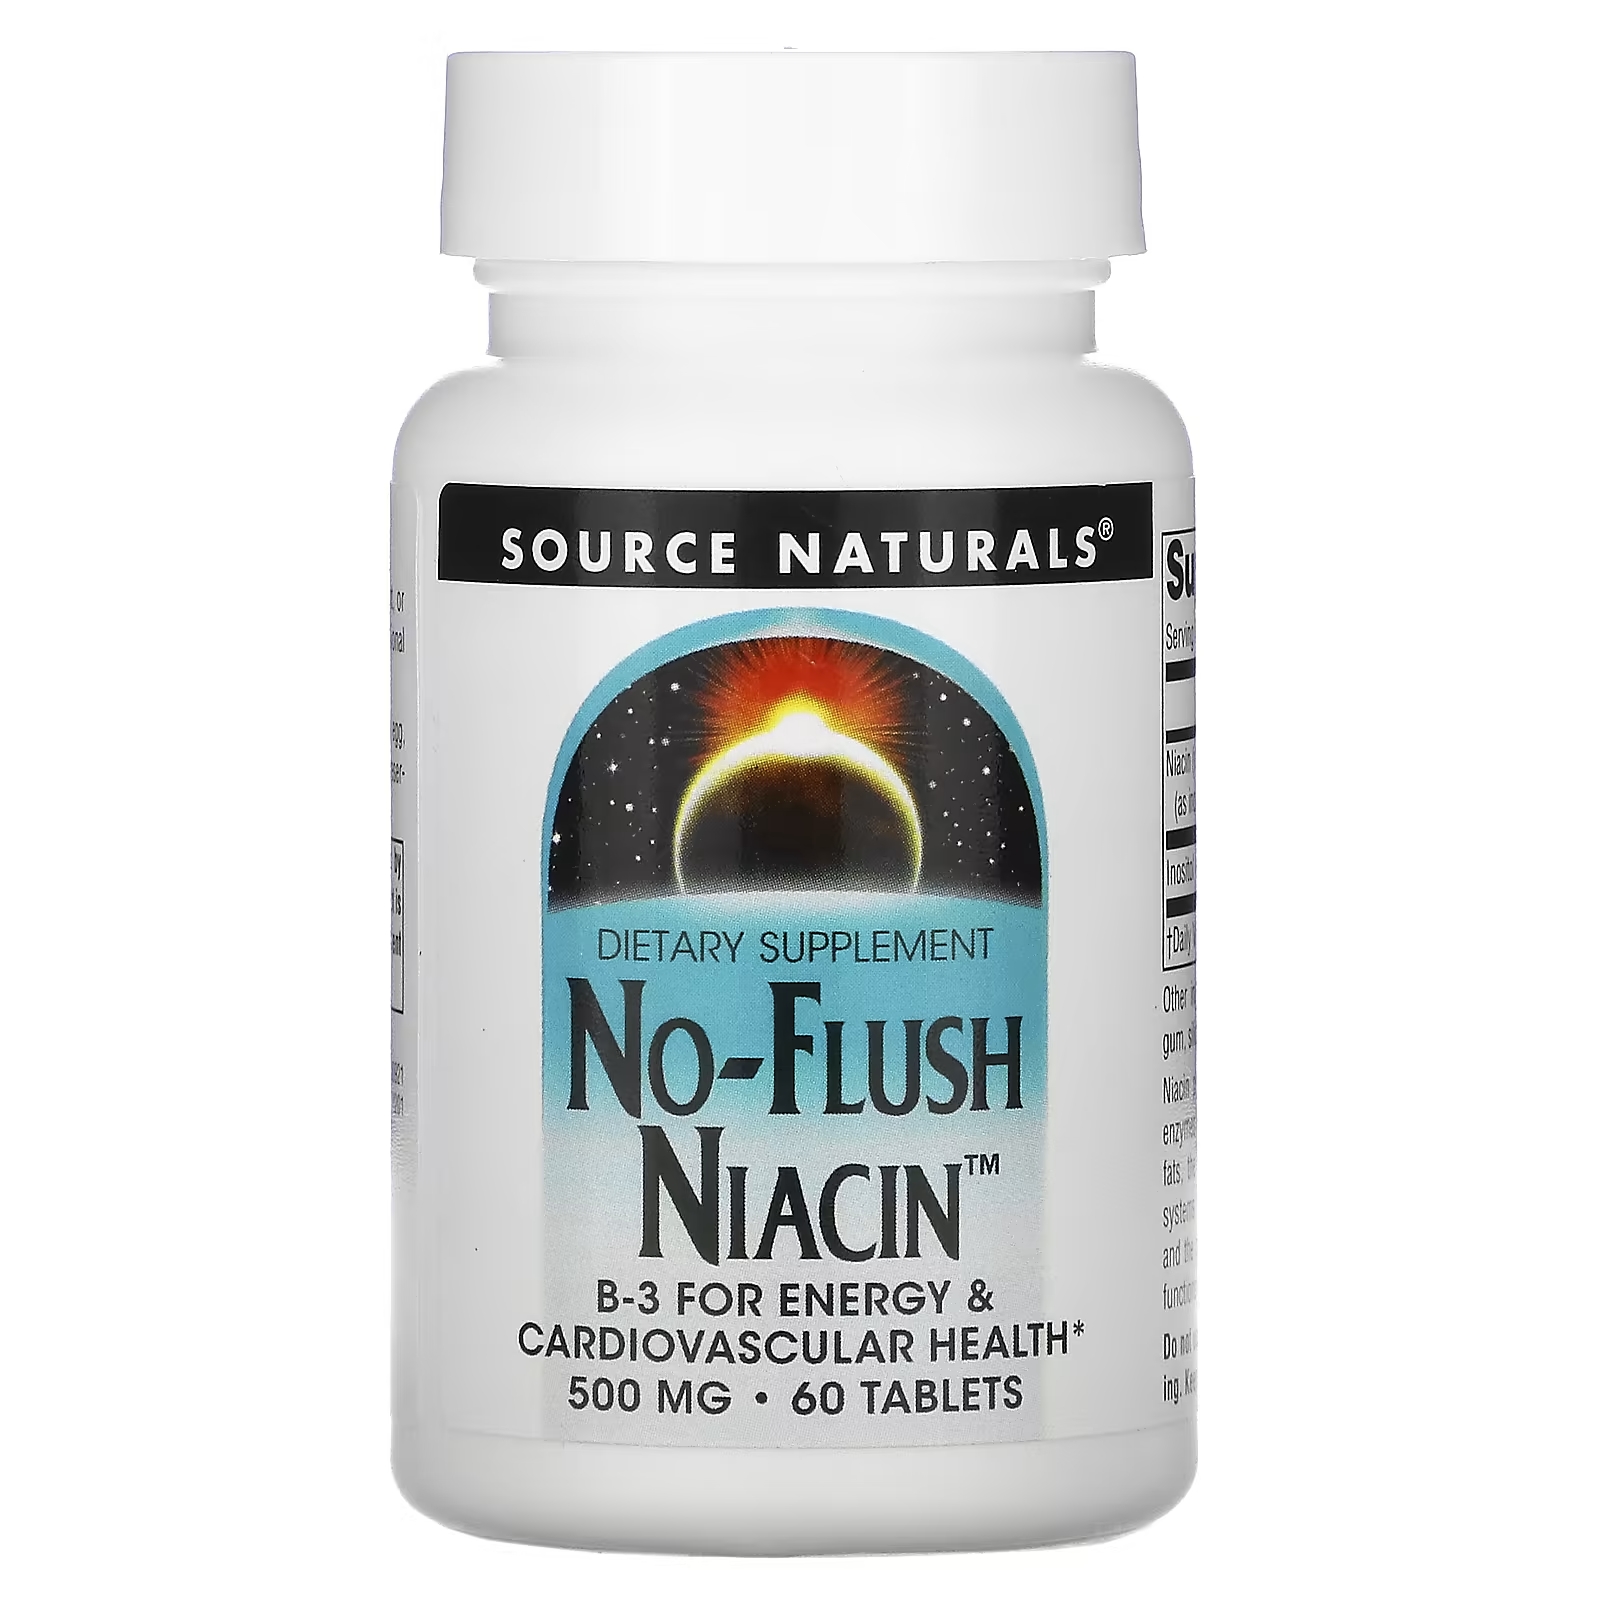 Source Naturals ниацин не вызывает приливов крови 500 мг, 60 таблеток life extension ниацин не вызывает приливов крови 640 мг 100 капсул